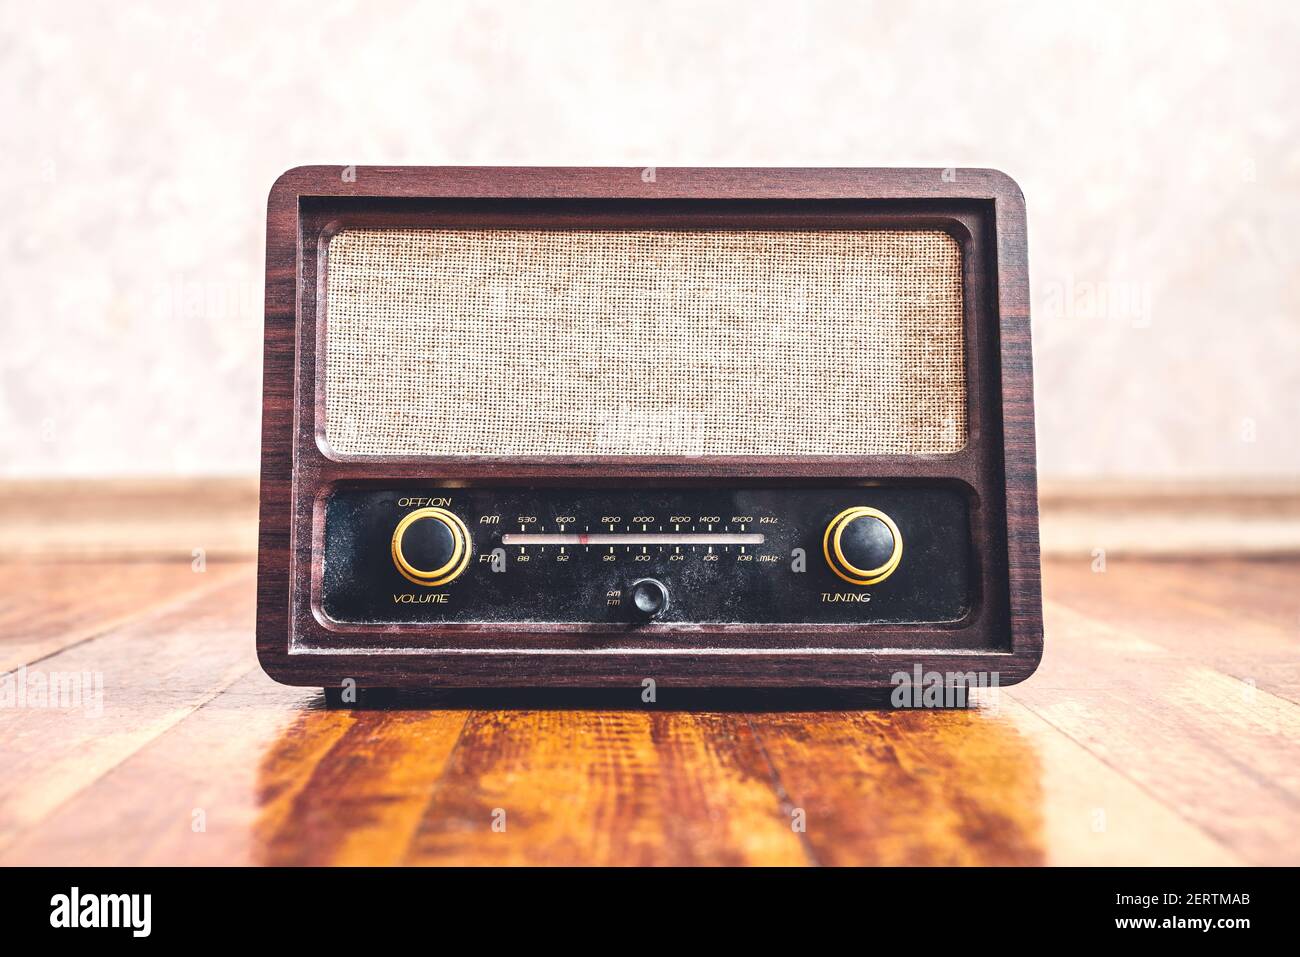 Retro-Radio im Vintage-Stil. Musik Nostalgie mit alten 60s Stil Song-Player. Staubiger Lautsprecher und Empfänger auf Holz. Drehknöpfe und Frequenztuner, Vorderansicht. Stockfoto